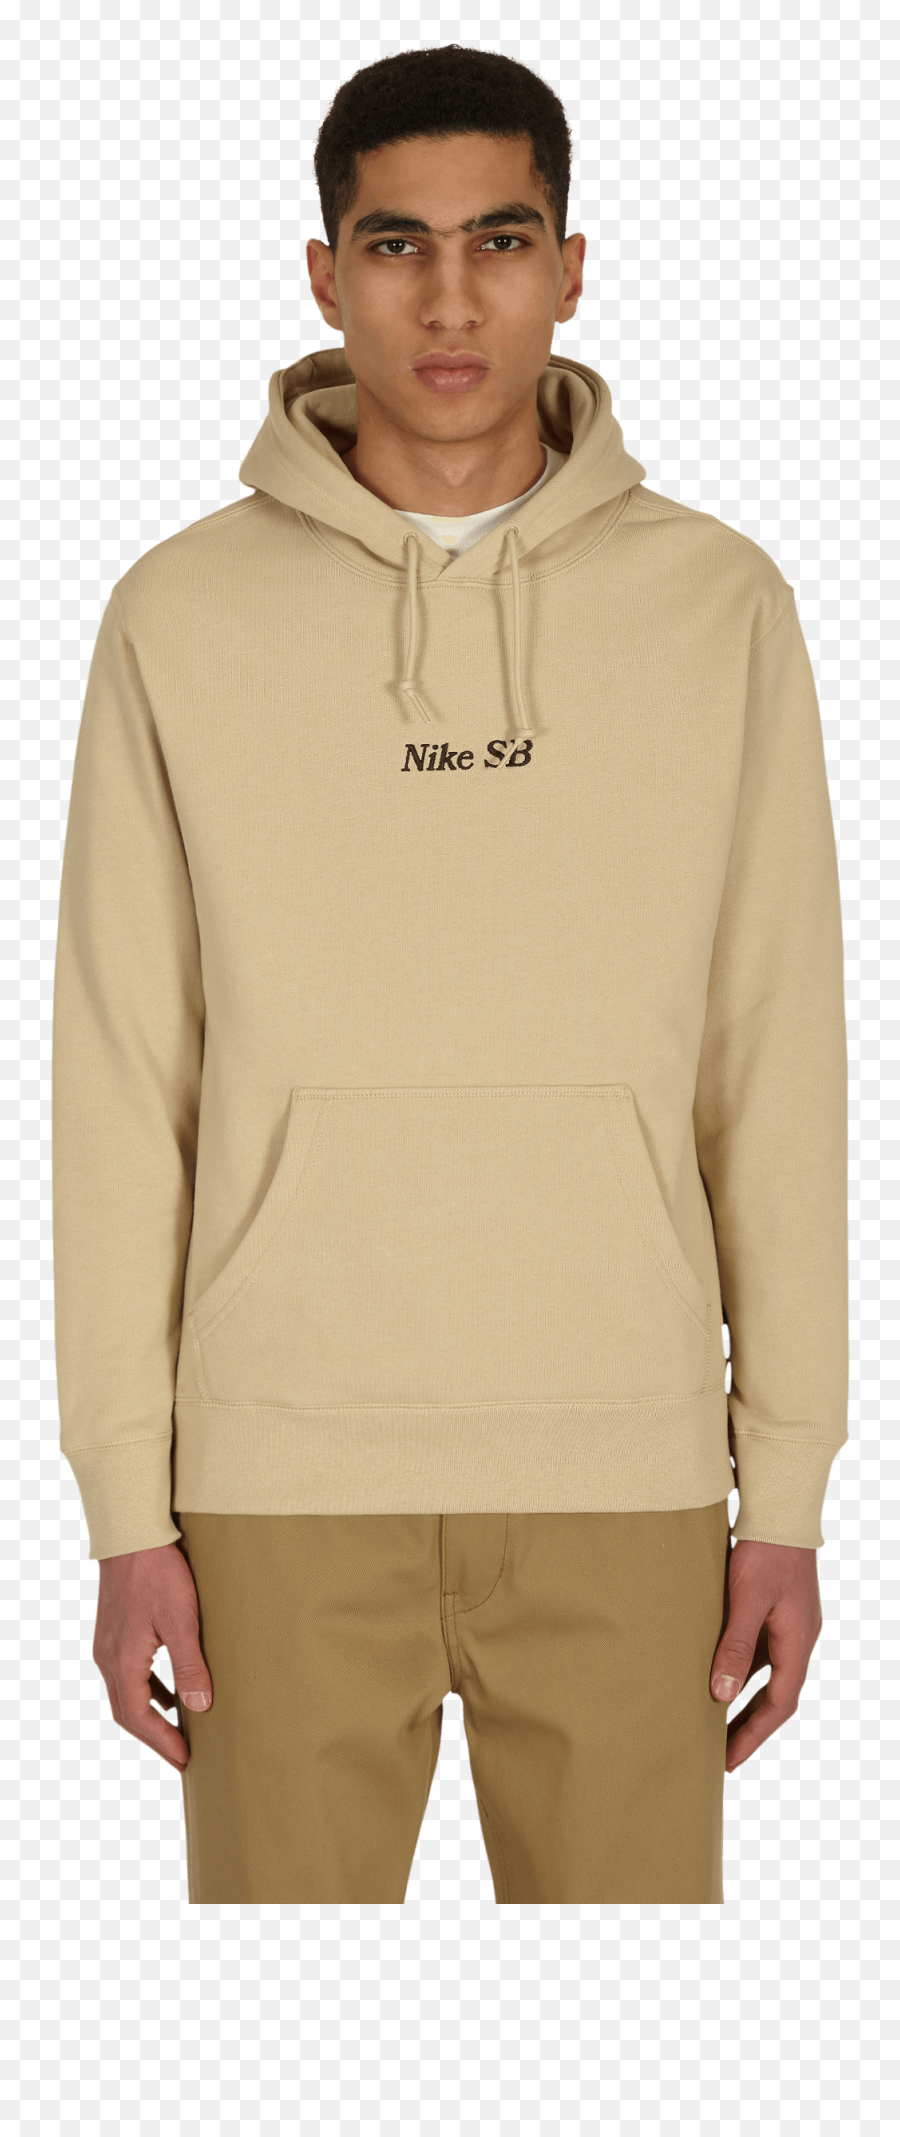 Nike Sb Graphic Skate Hooded Sweatshirt - Hood Emoji,Nike Sb Logo